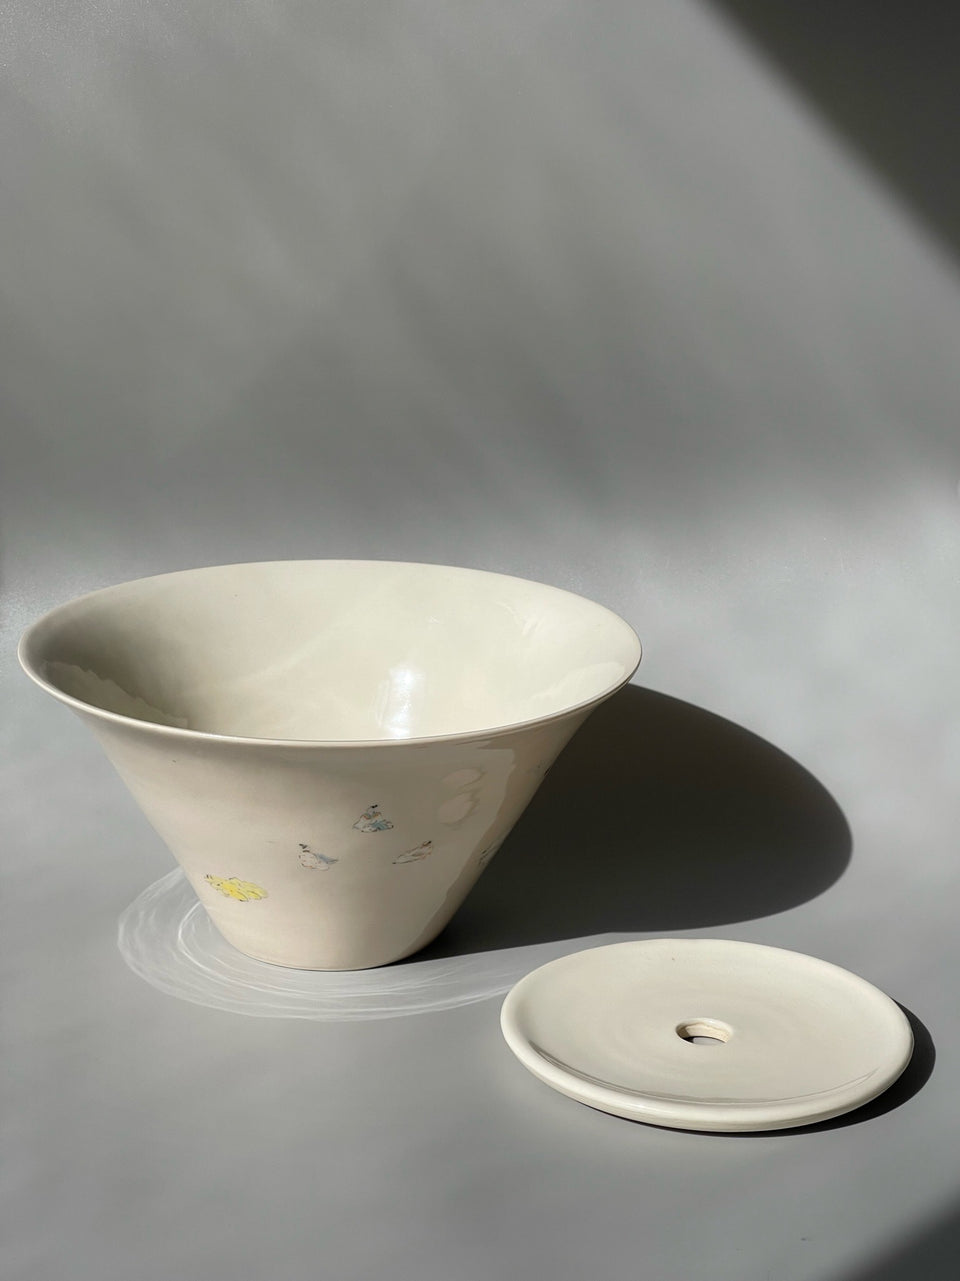 In Between Pot Support/ Vase/ Hucheng/ Bowl